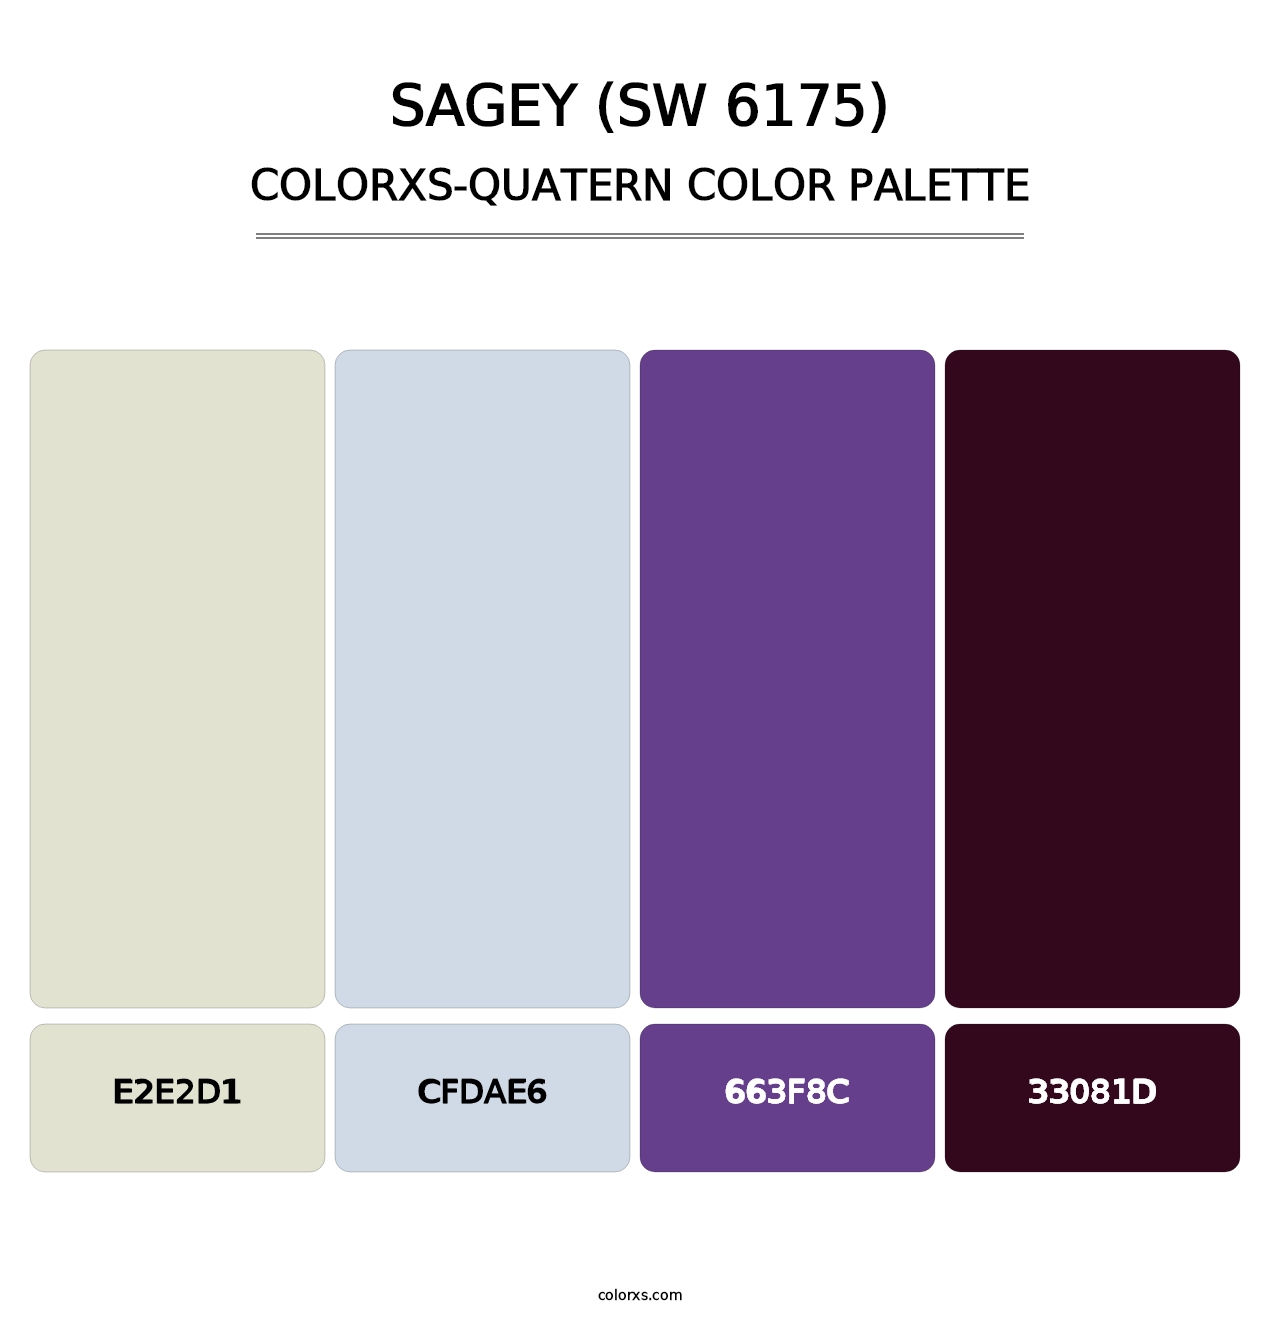 Sagey (SW 6175) - Colorxs Quatern Palette